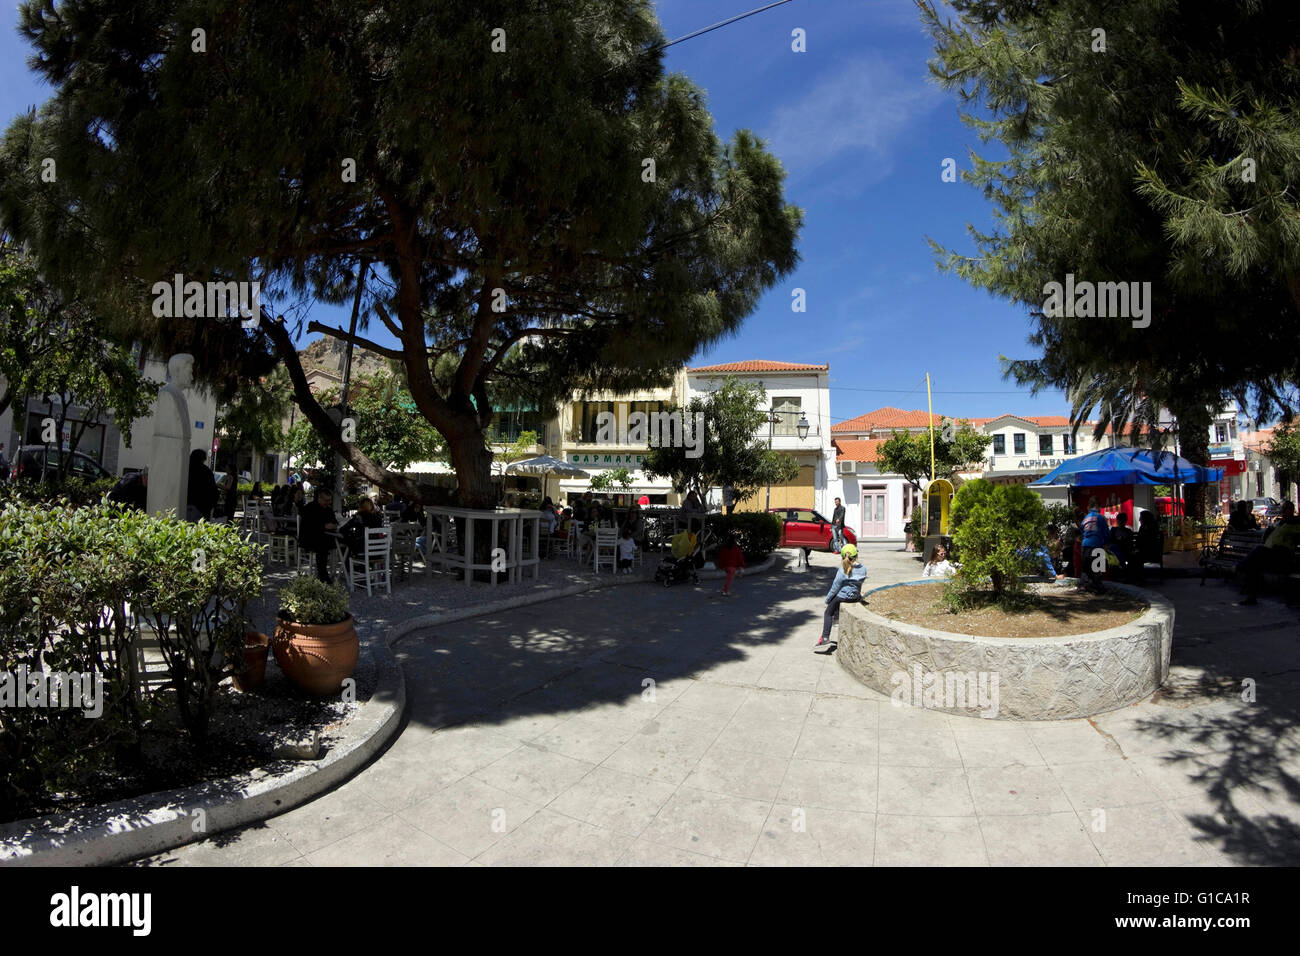 Myrina (capitale) centre ville & café jardin bougatsa boutiques dans 'l'OTE' square, P. Kida street. Limnos ou île de Lemnos, Grèce Banque D'Images